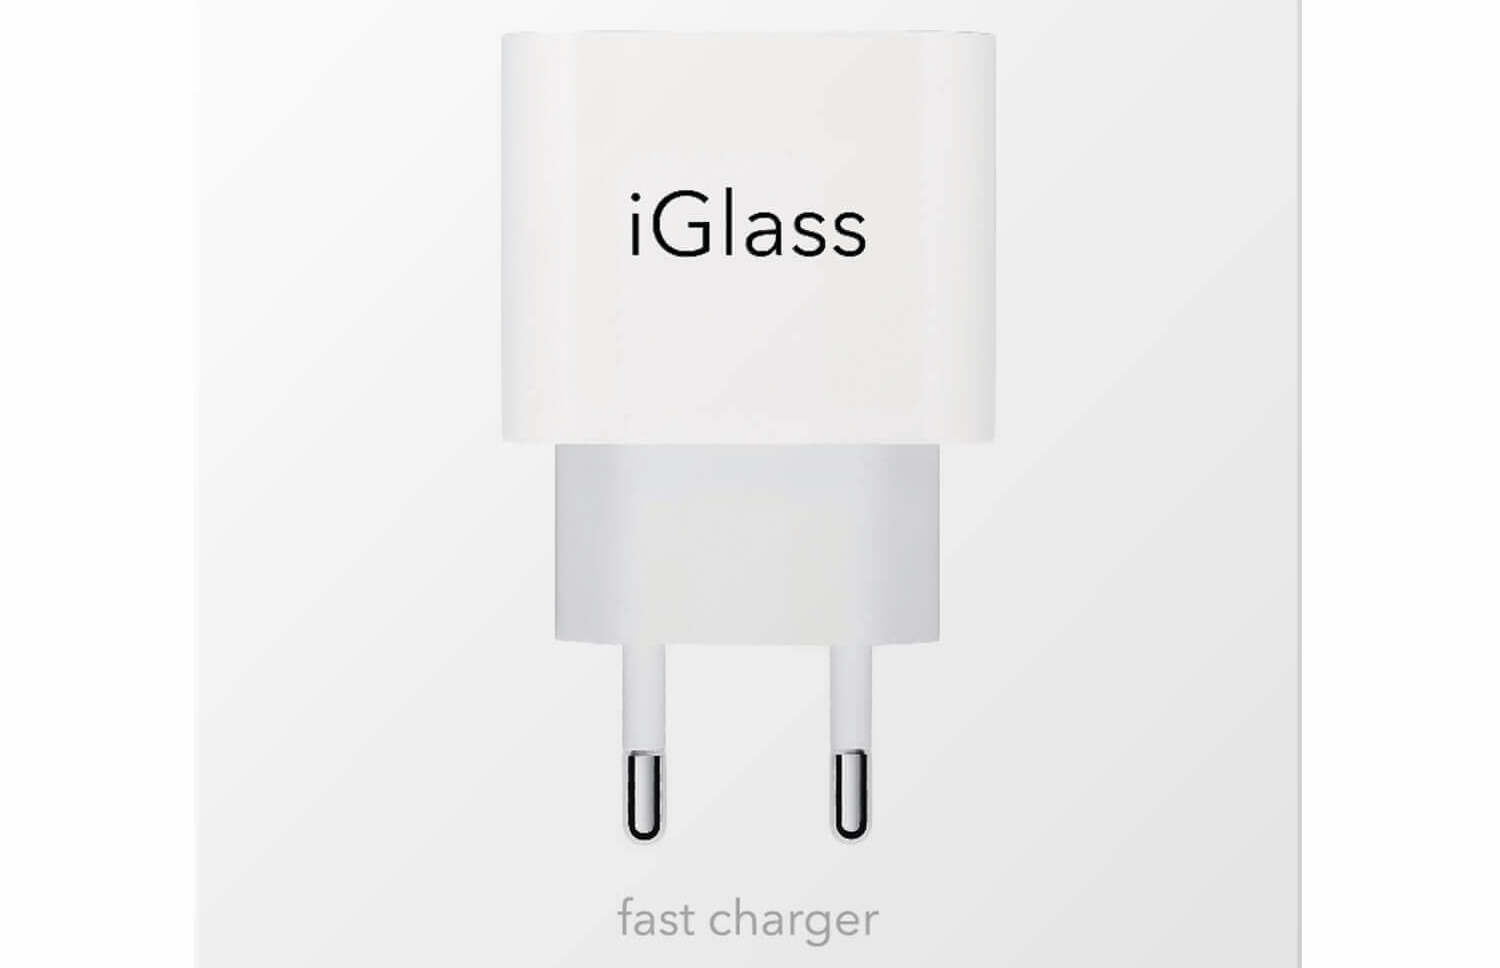 Kiderült, milyen gyorsan tölti fel az iGlass fali adapter a telefonodat!